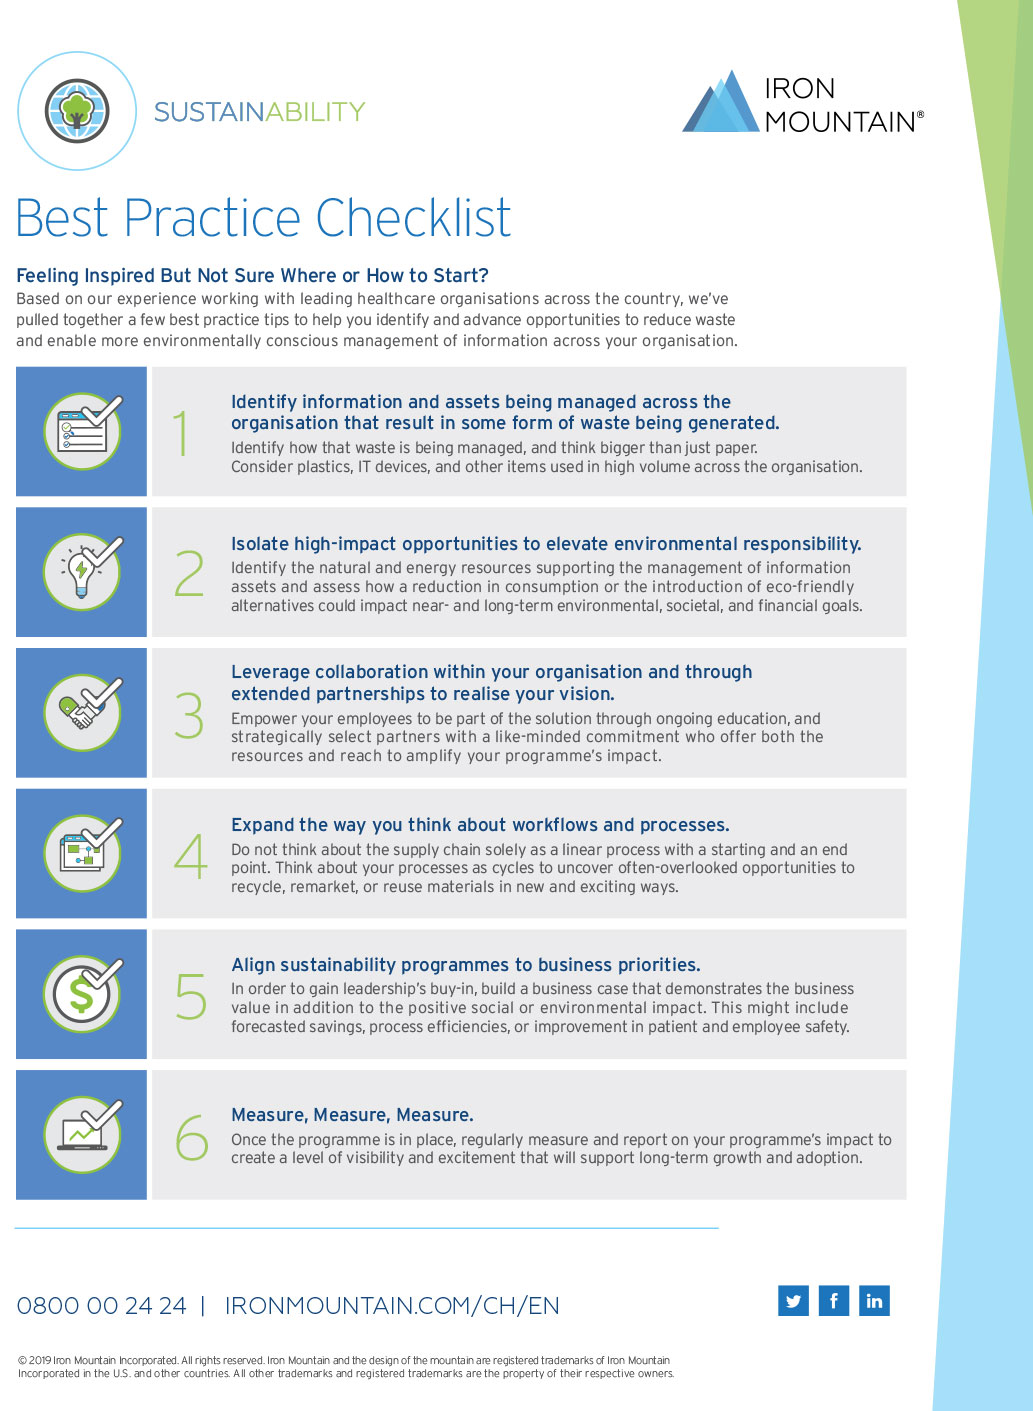 Sustainability Best Practice Checklist